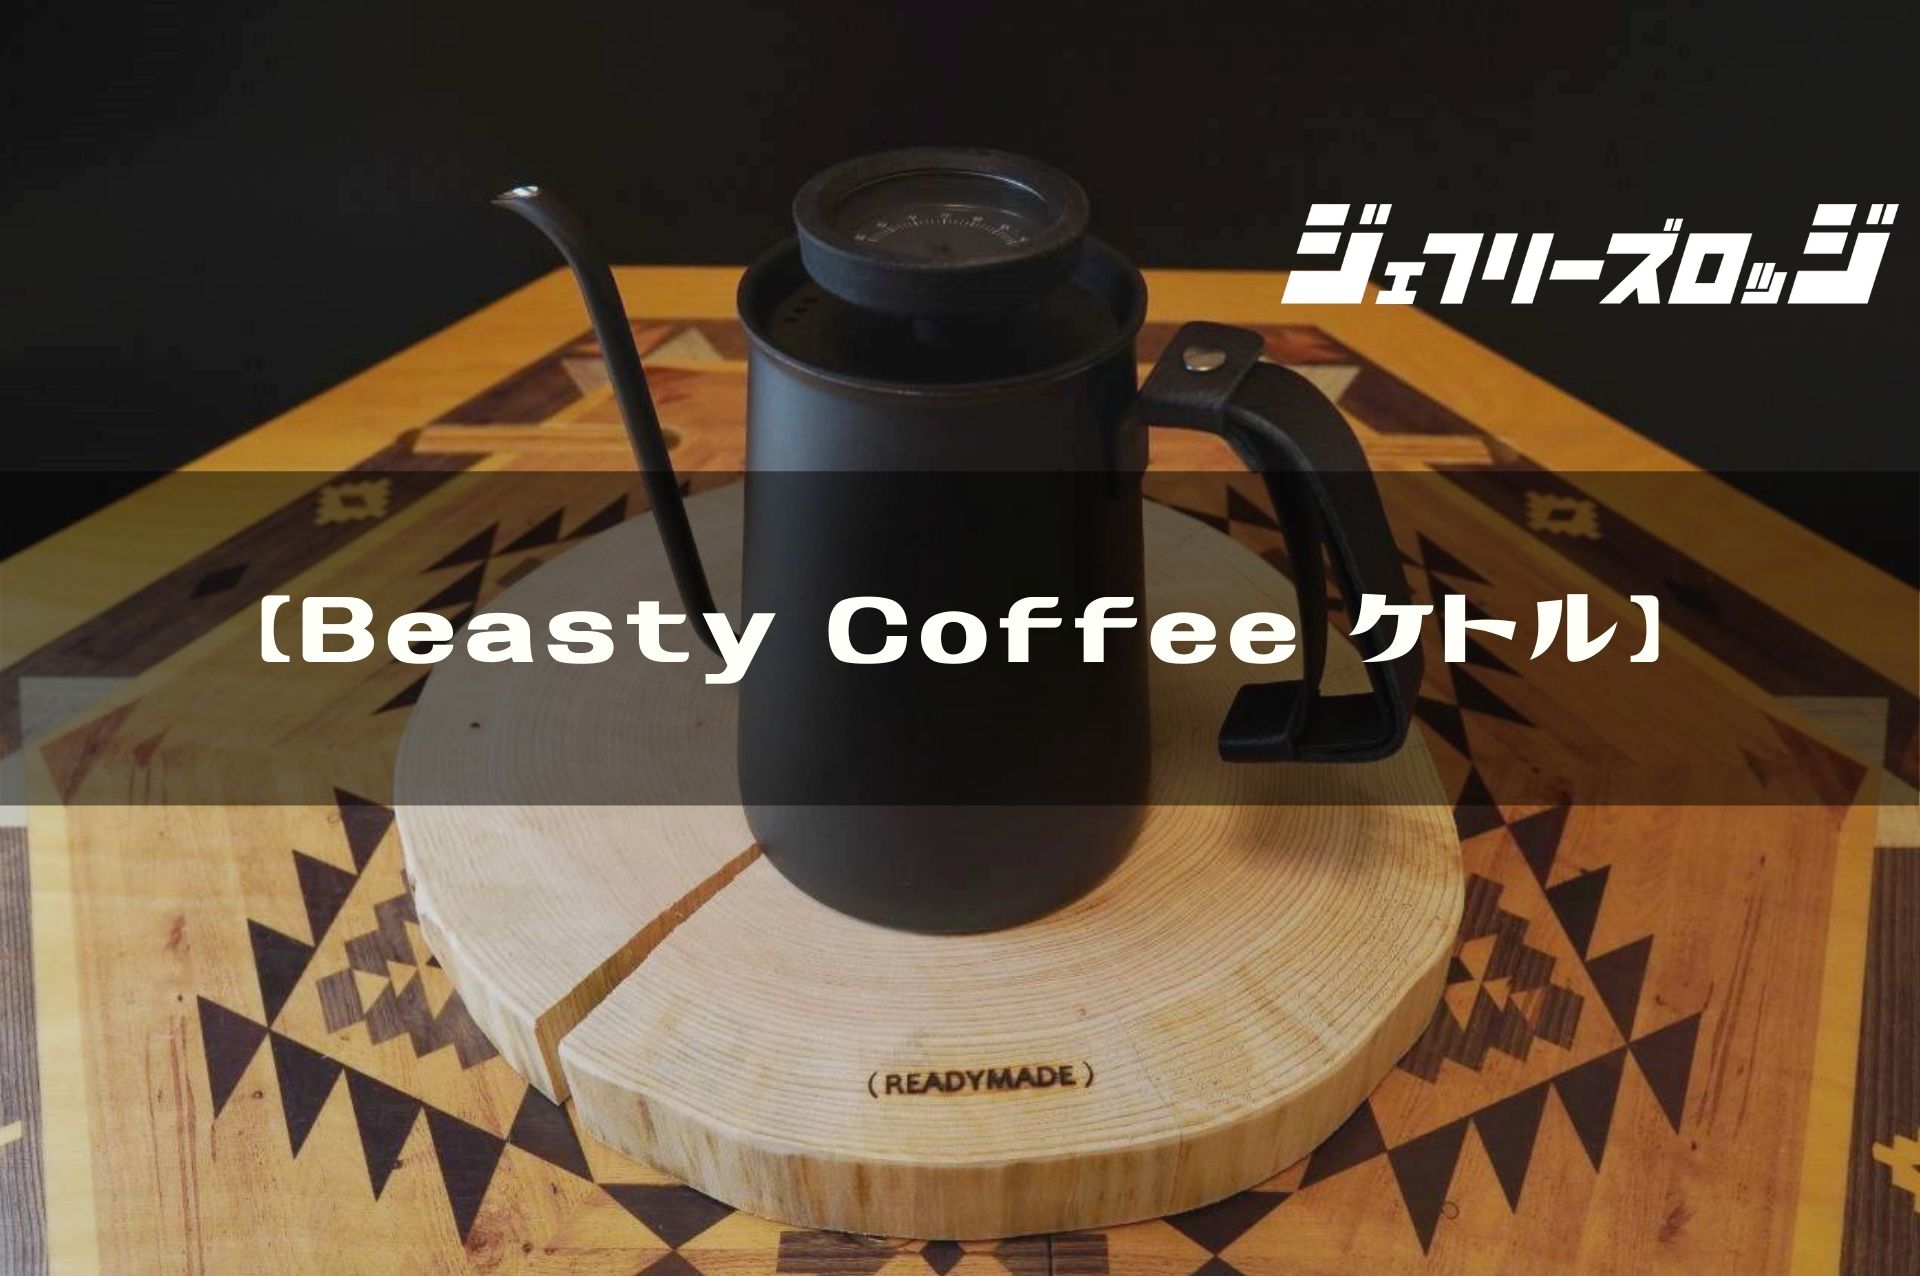 アウトレットの半額  ドリッパーセット ケトル コーヒー Coffee Beasty 調理器具